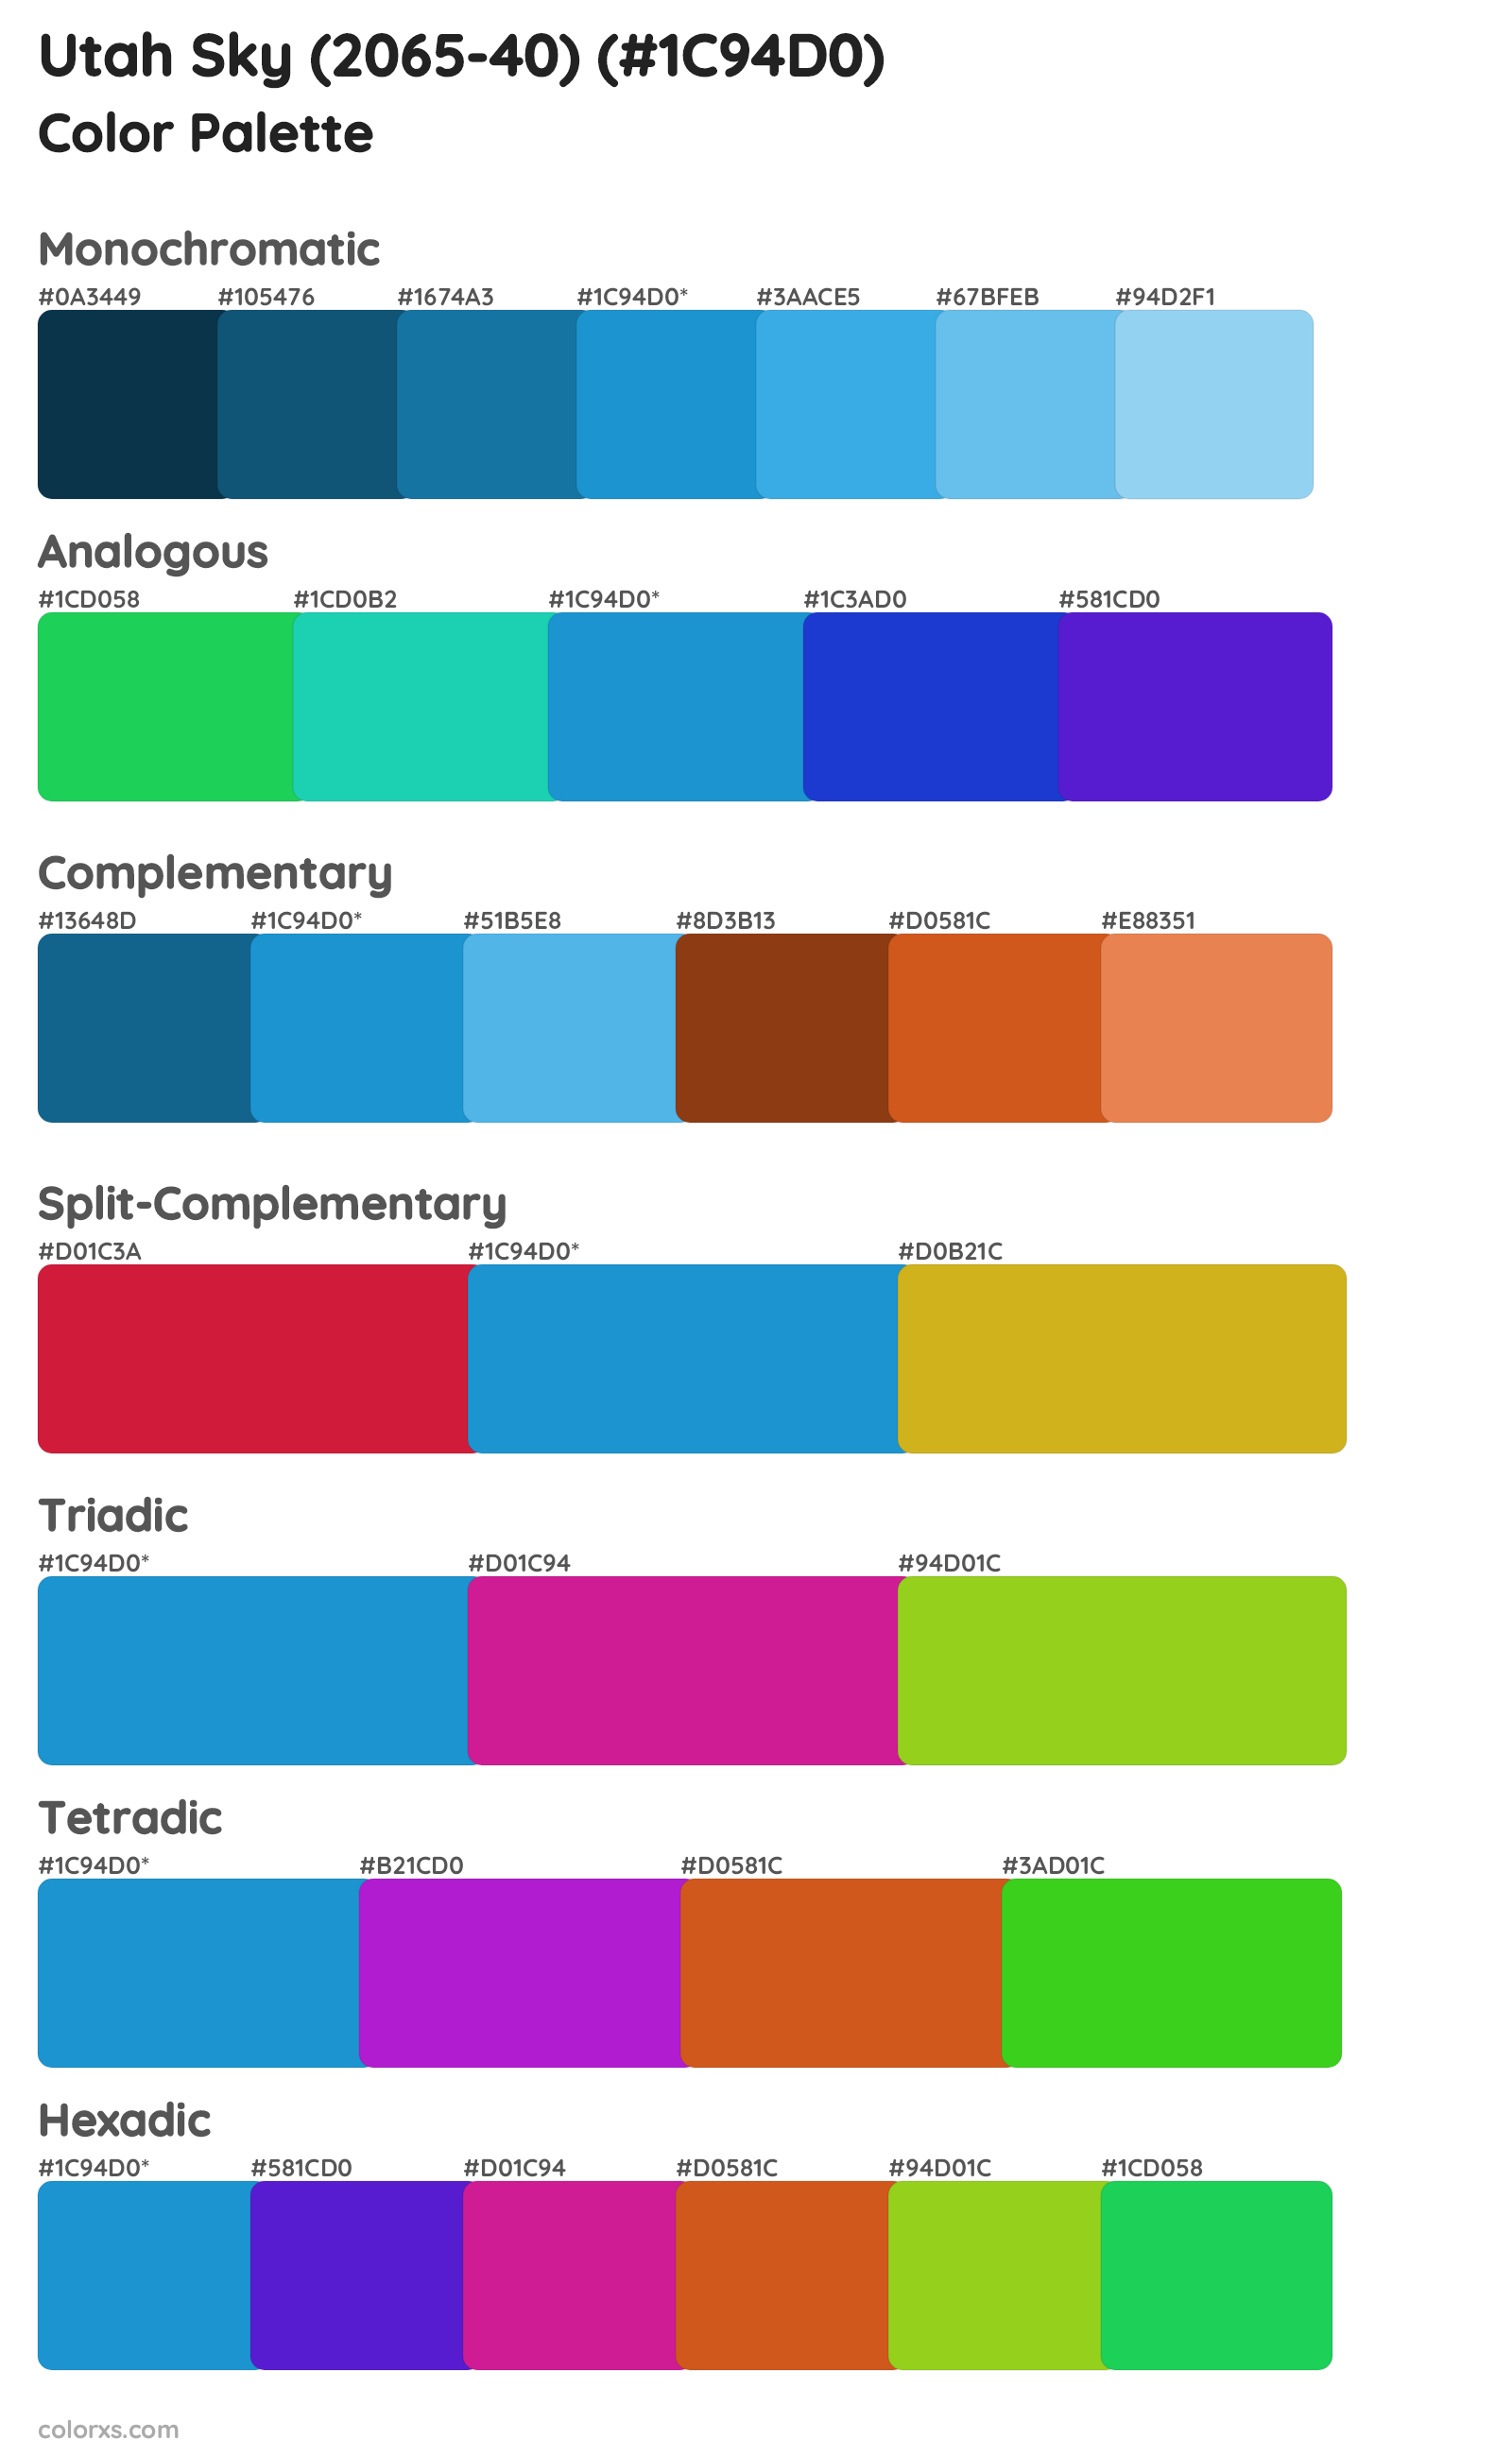 Utah Sky (2065-40) Color Scheme Palettes